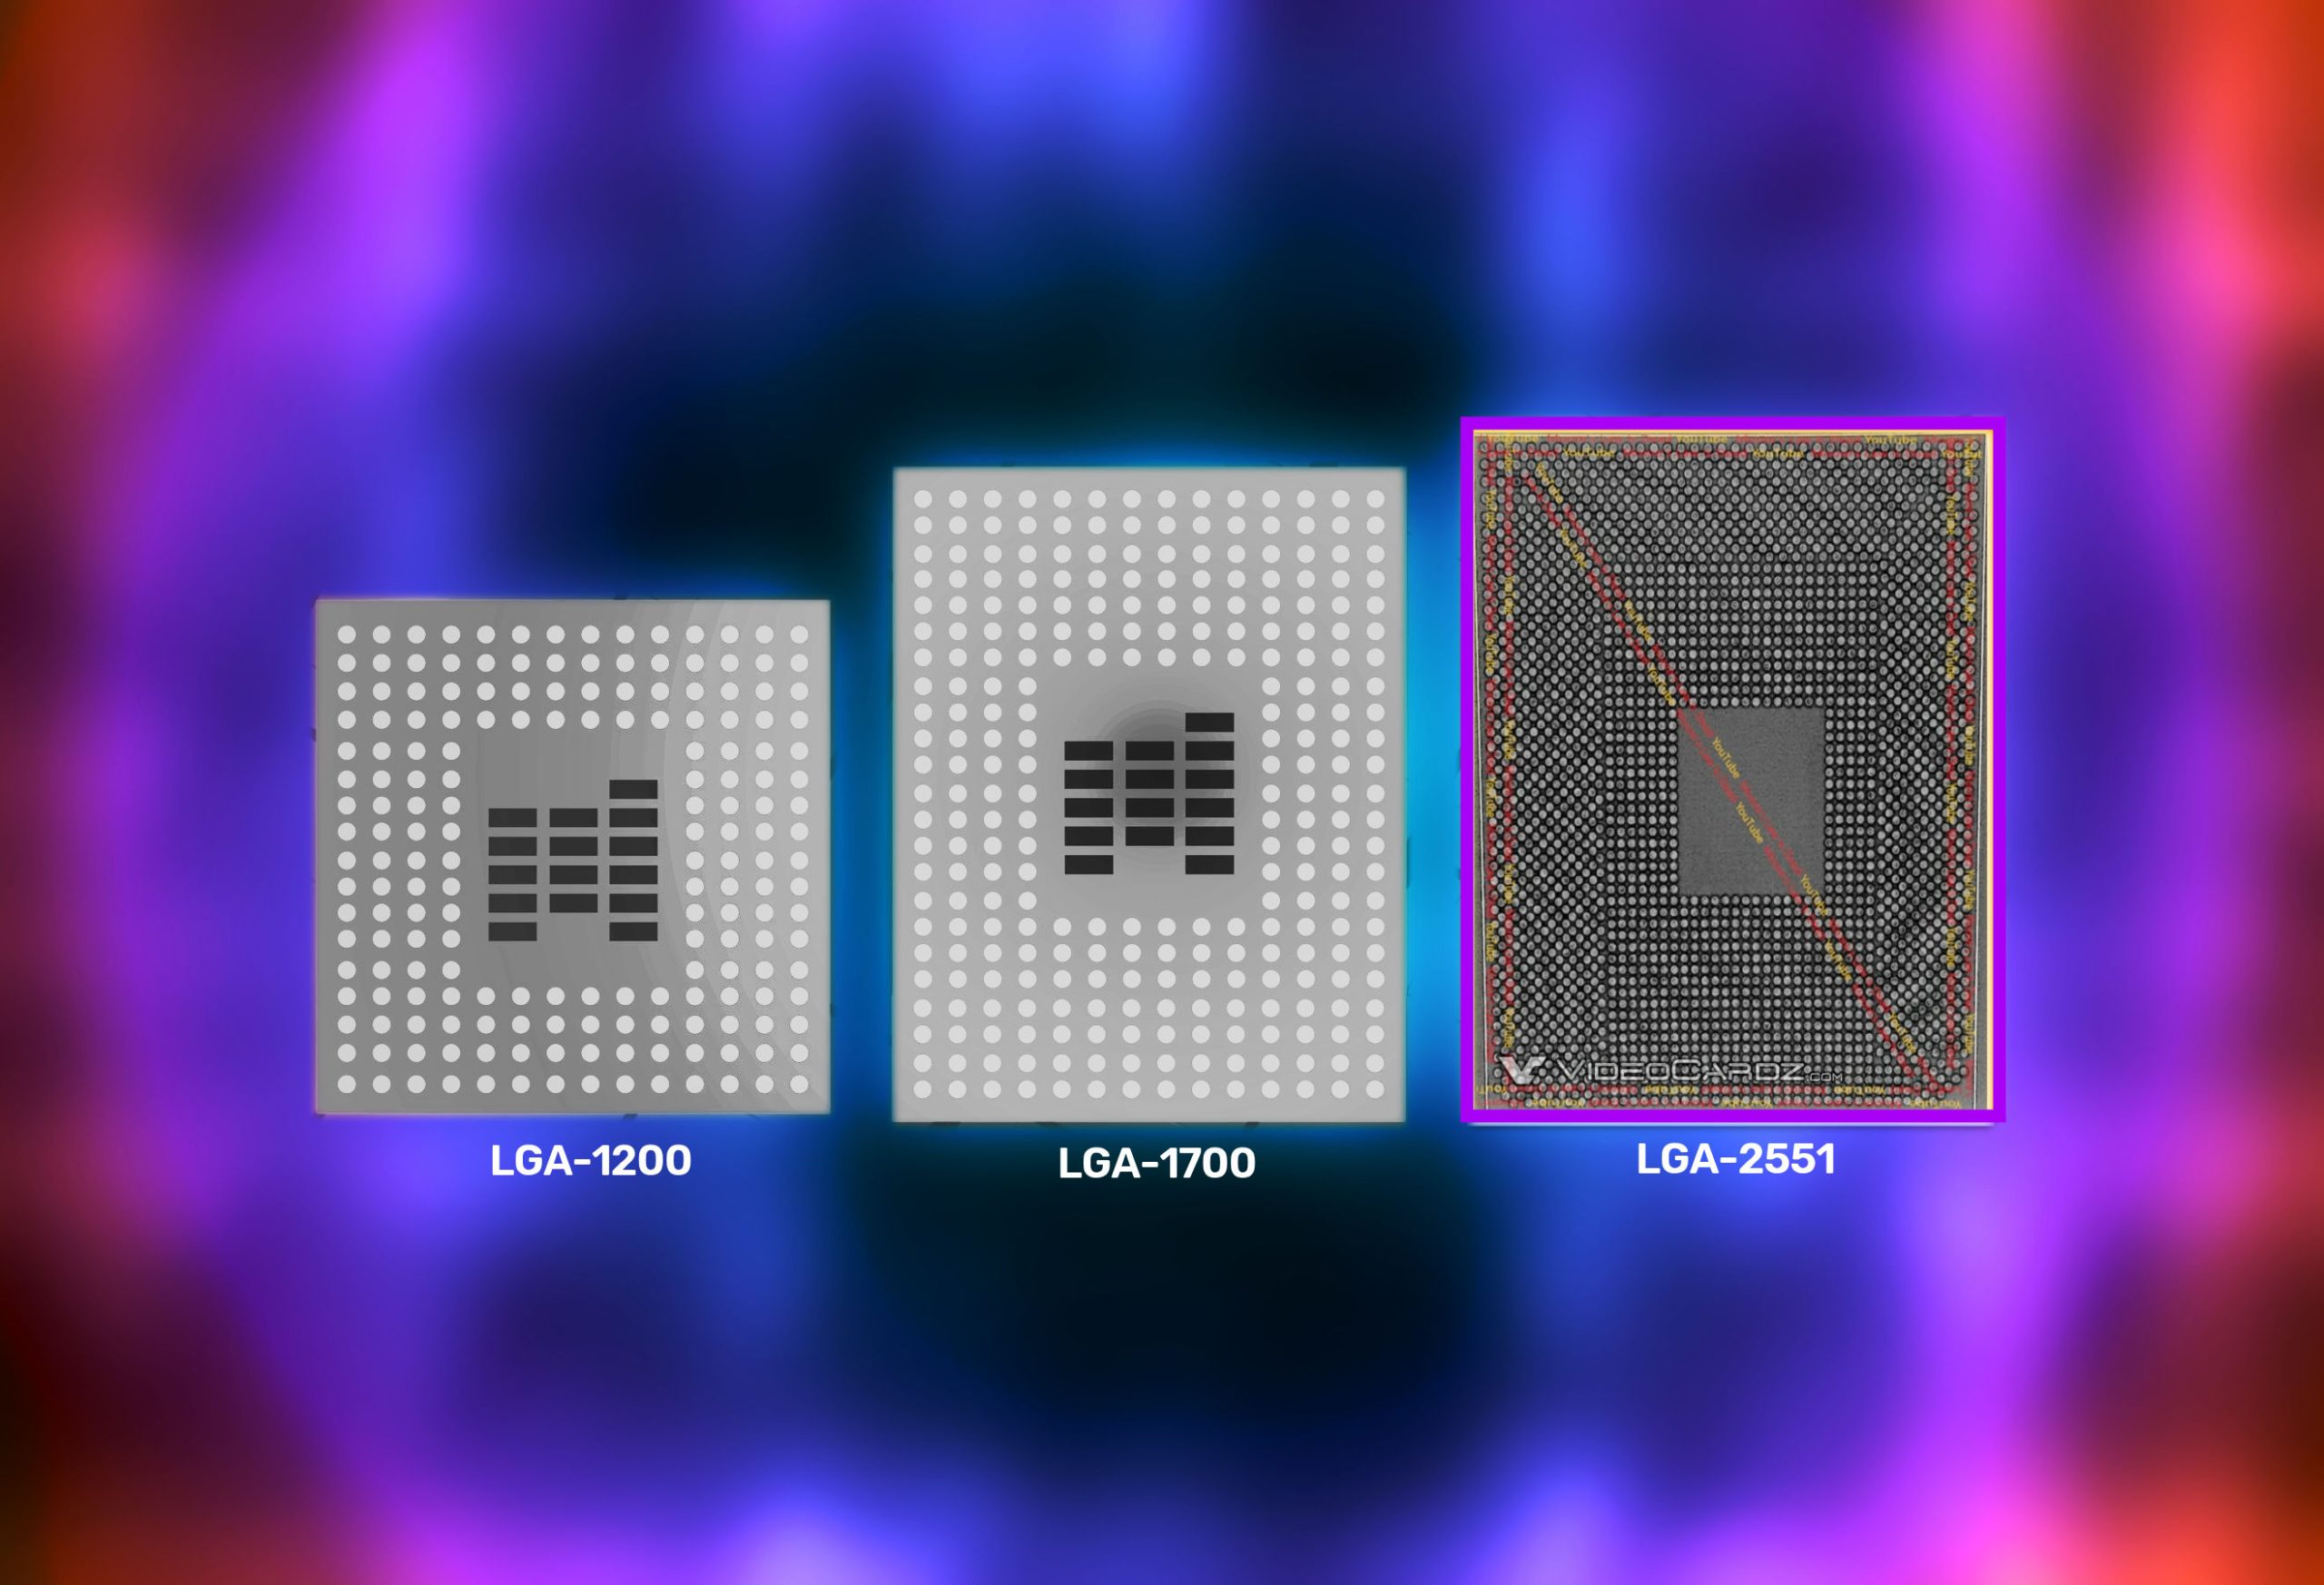 La computadora de escritorio 'Meteor Lake' de Intel de 14a generación supuestamente requiere un nuevo zócalo LGA-2551